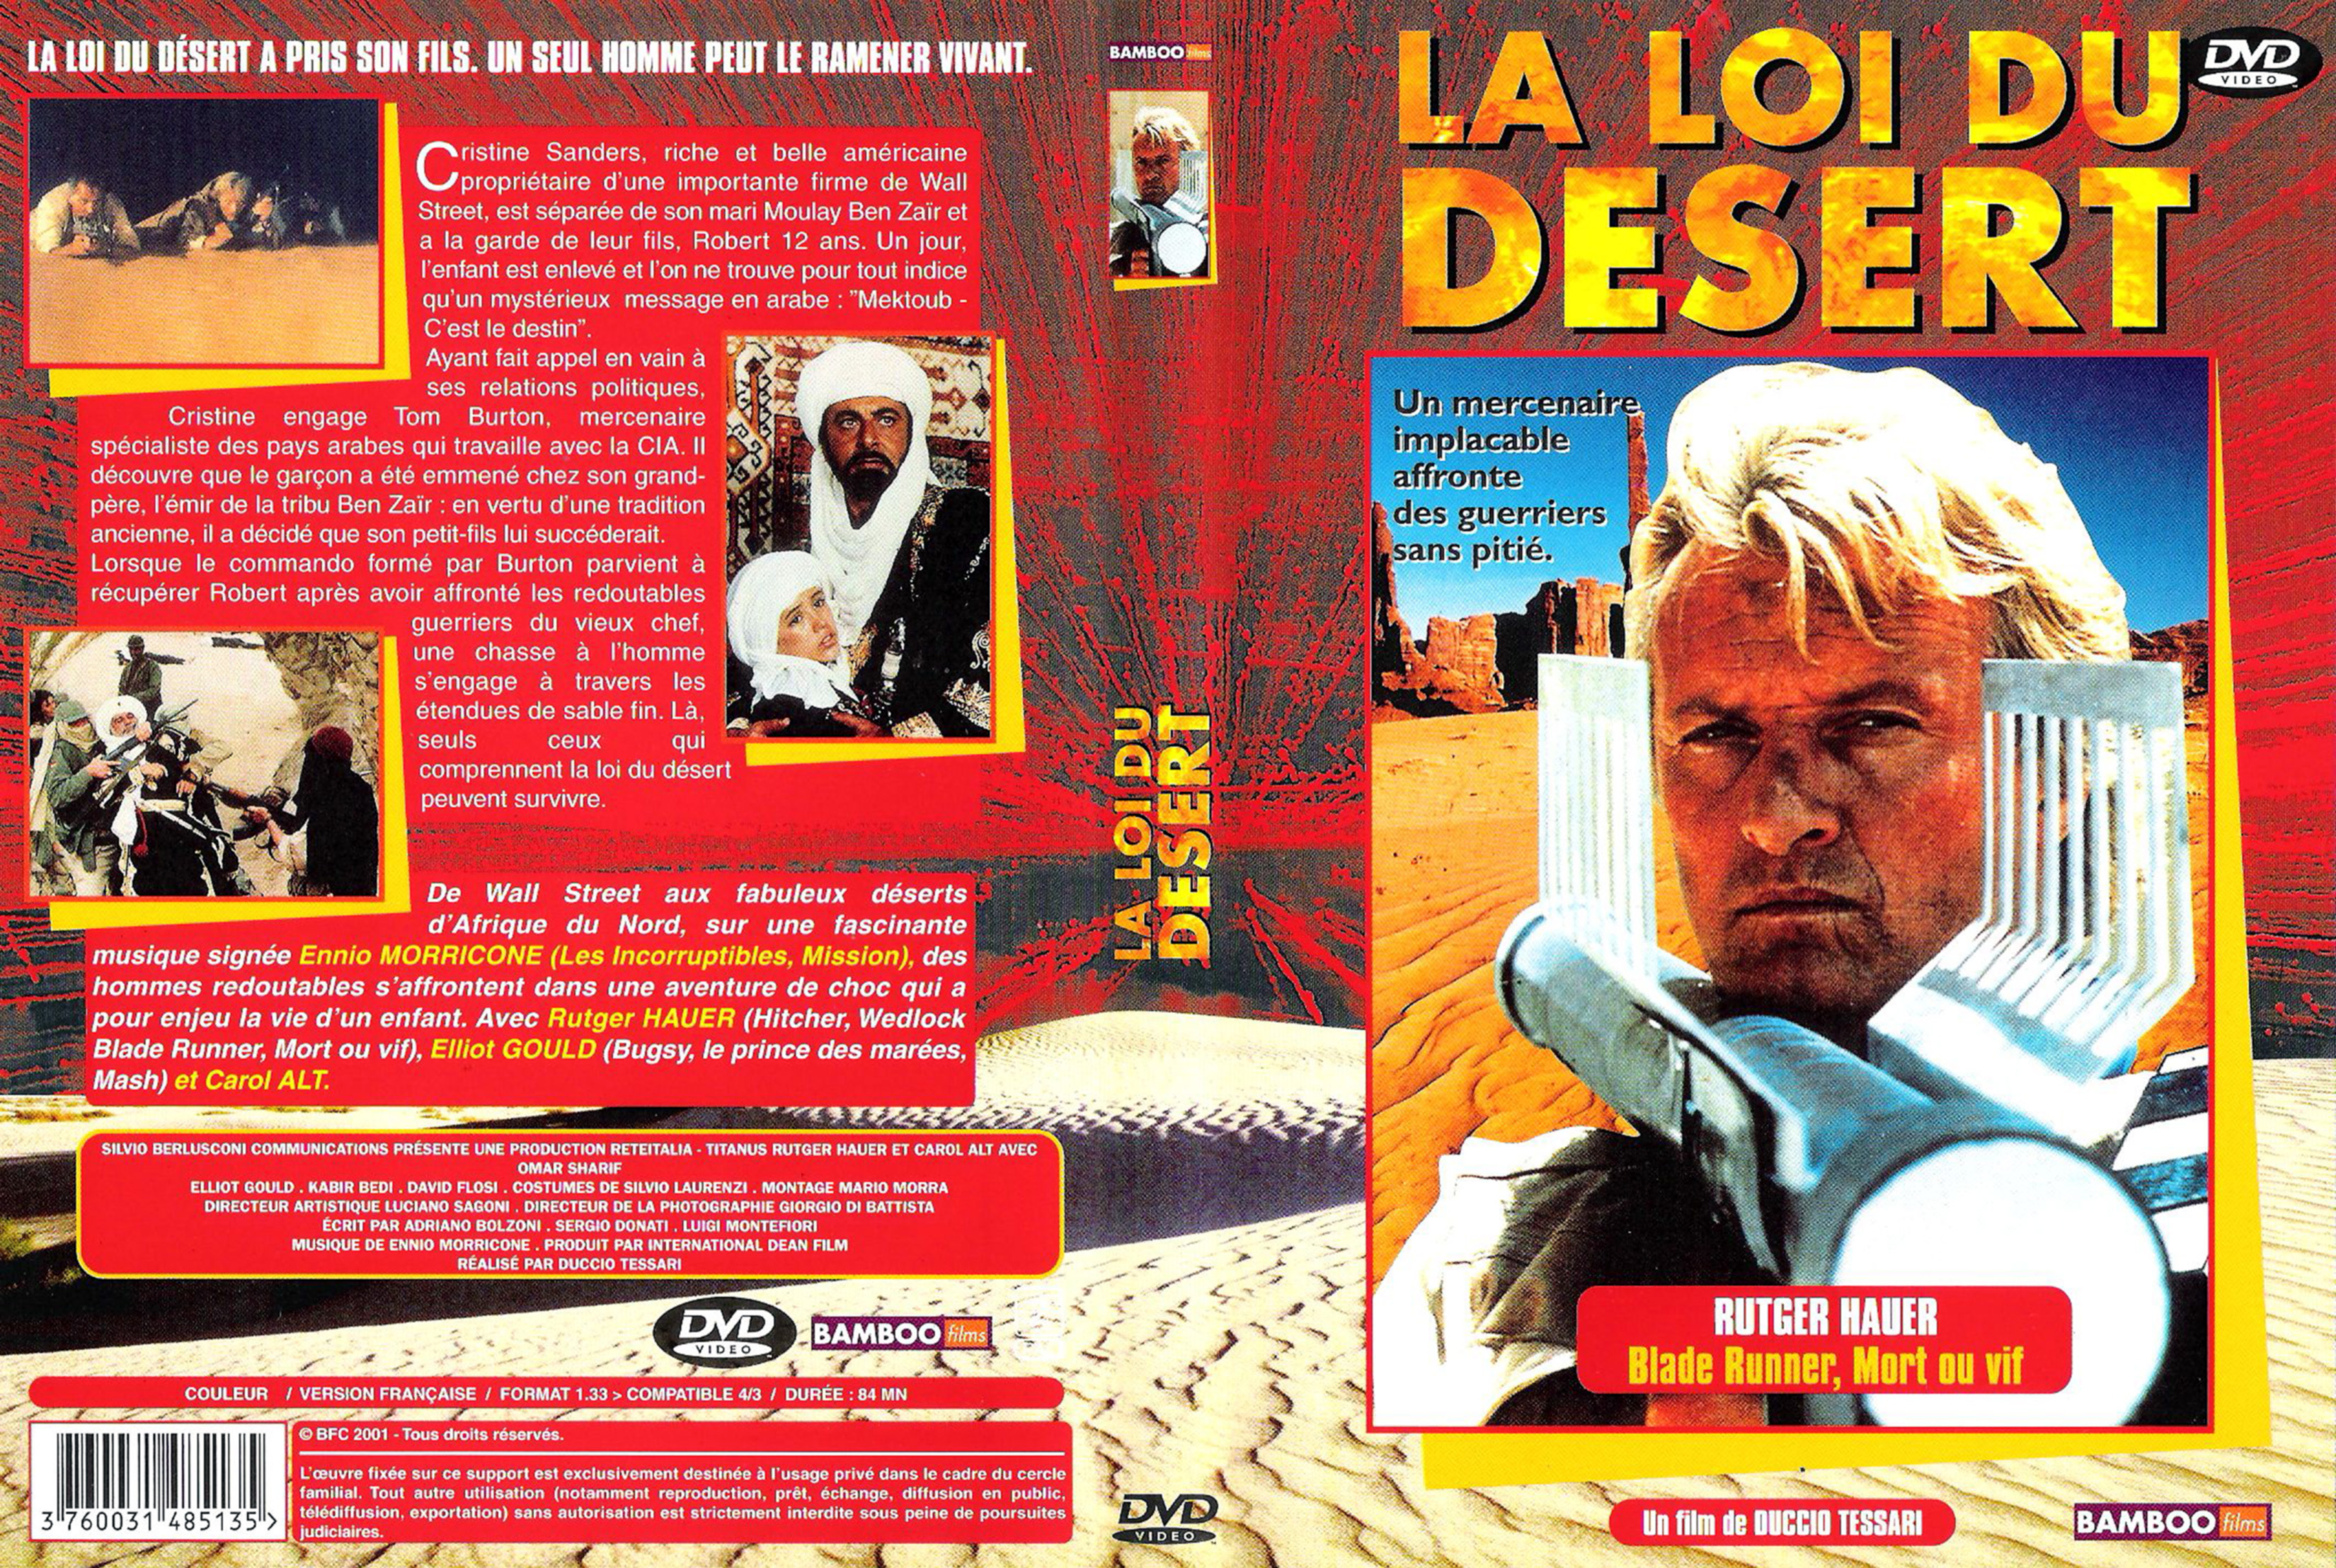 Jaquette DVD La loi du desert v2